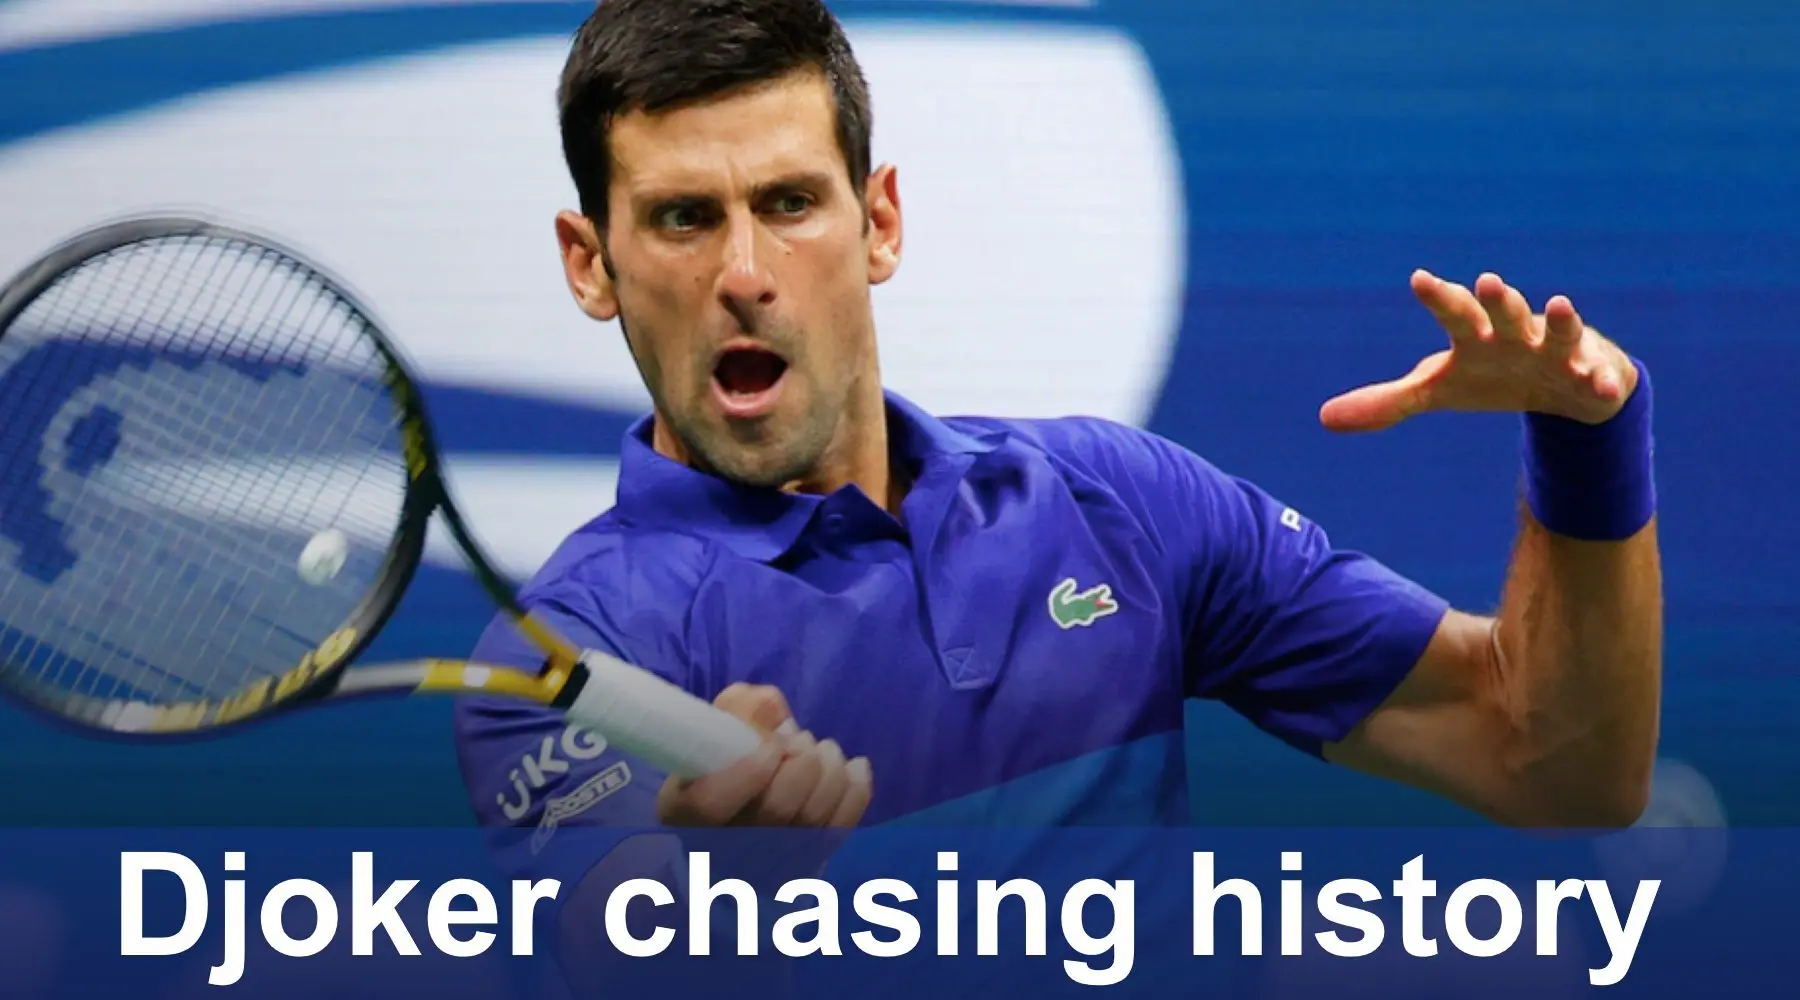 How to watch Novak Djokovic in the US Open final online